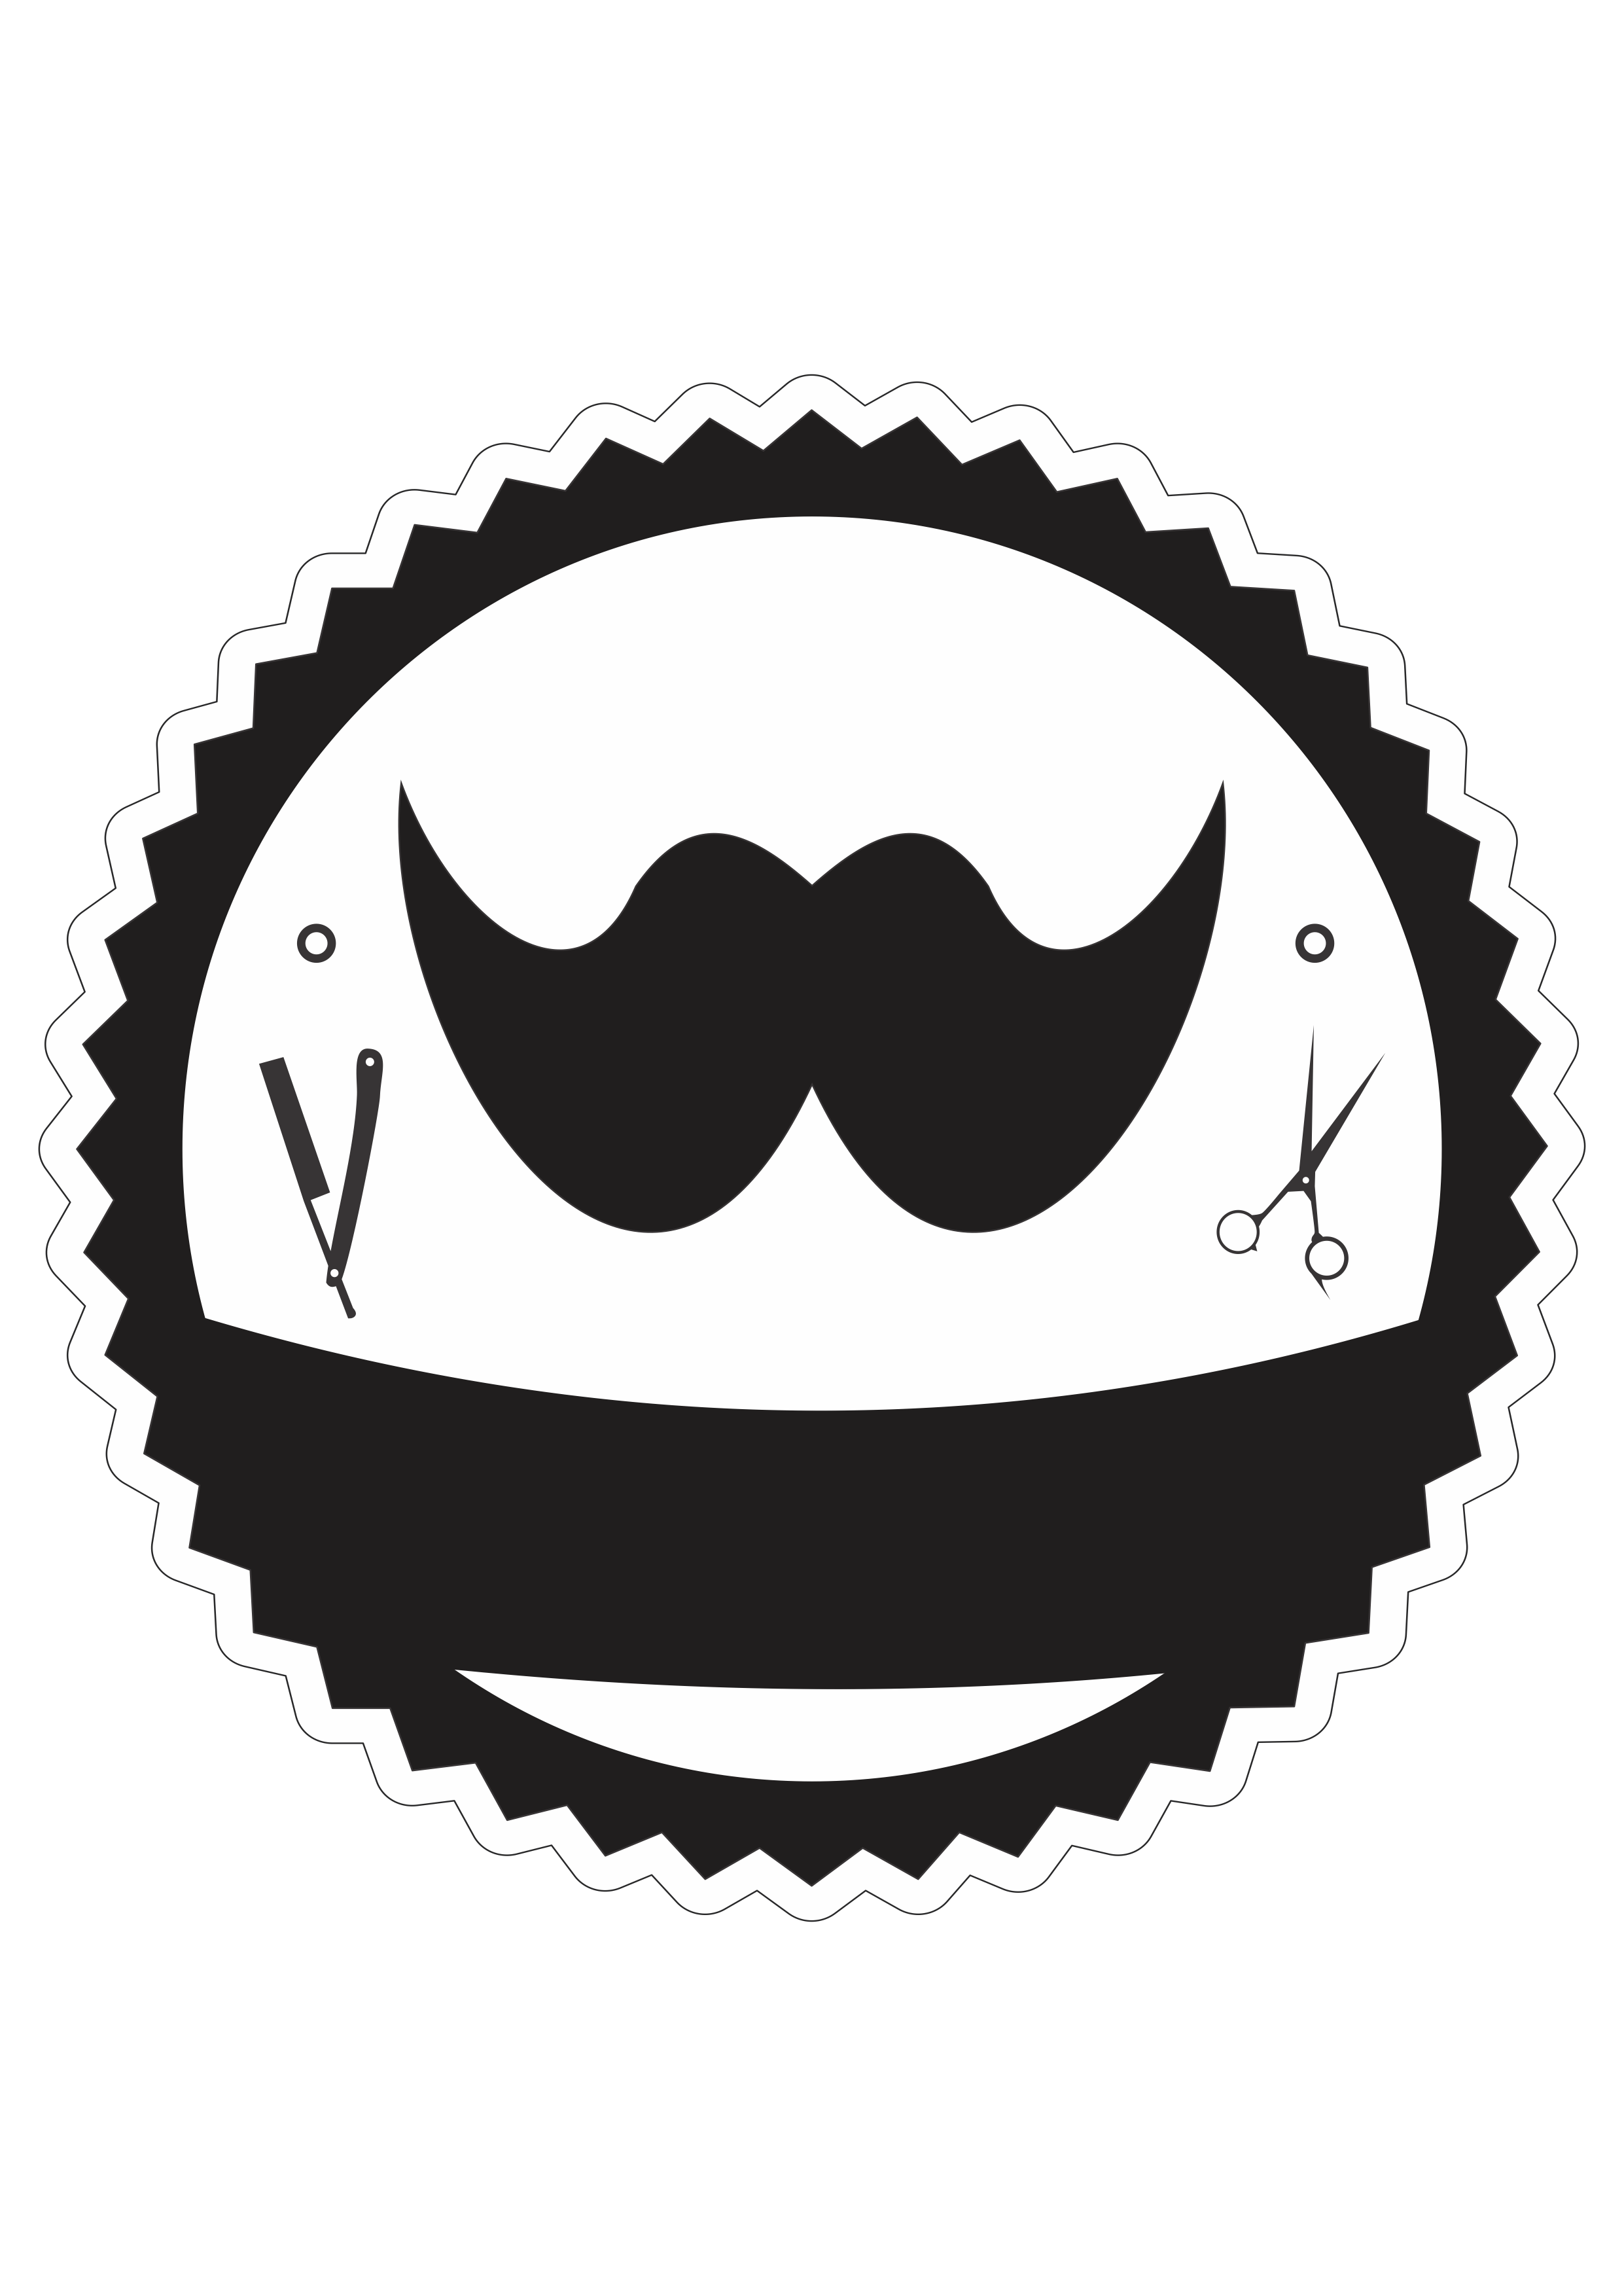 Barbearia logomarca png